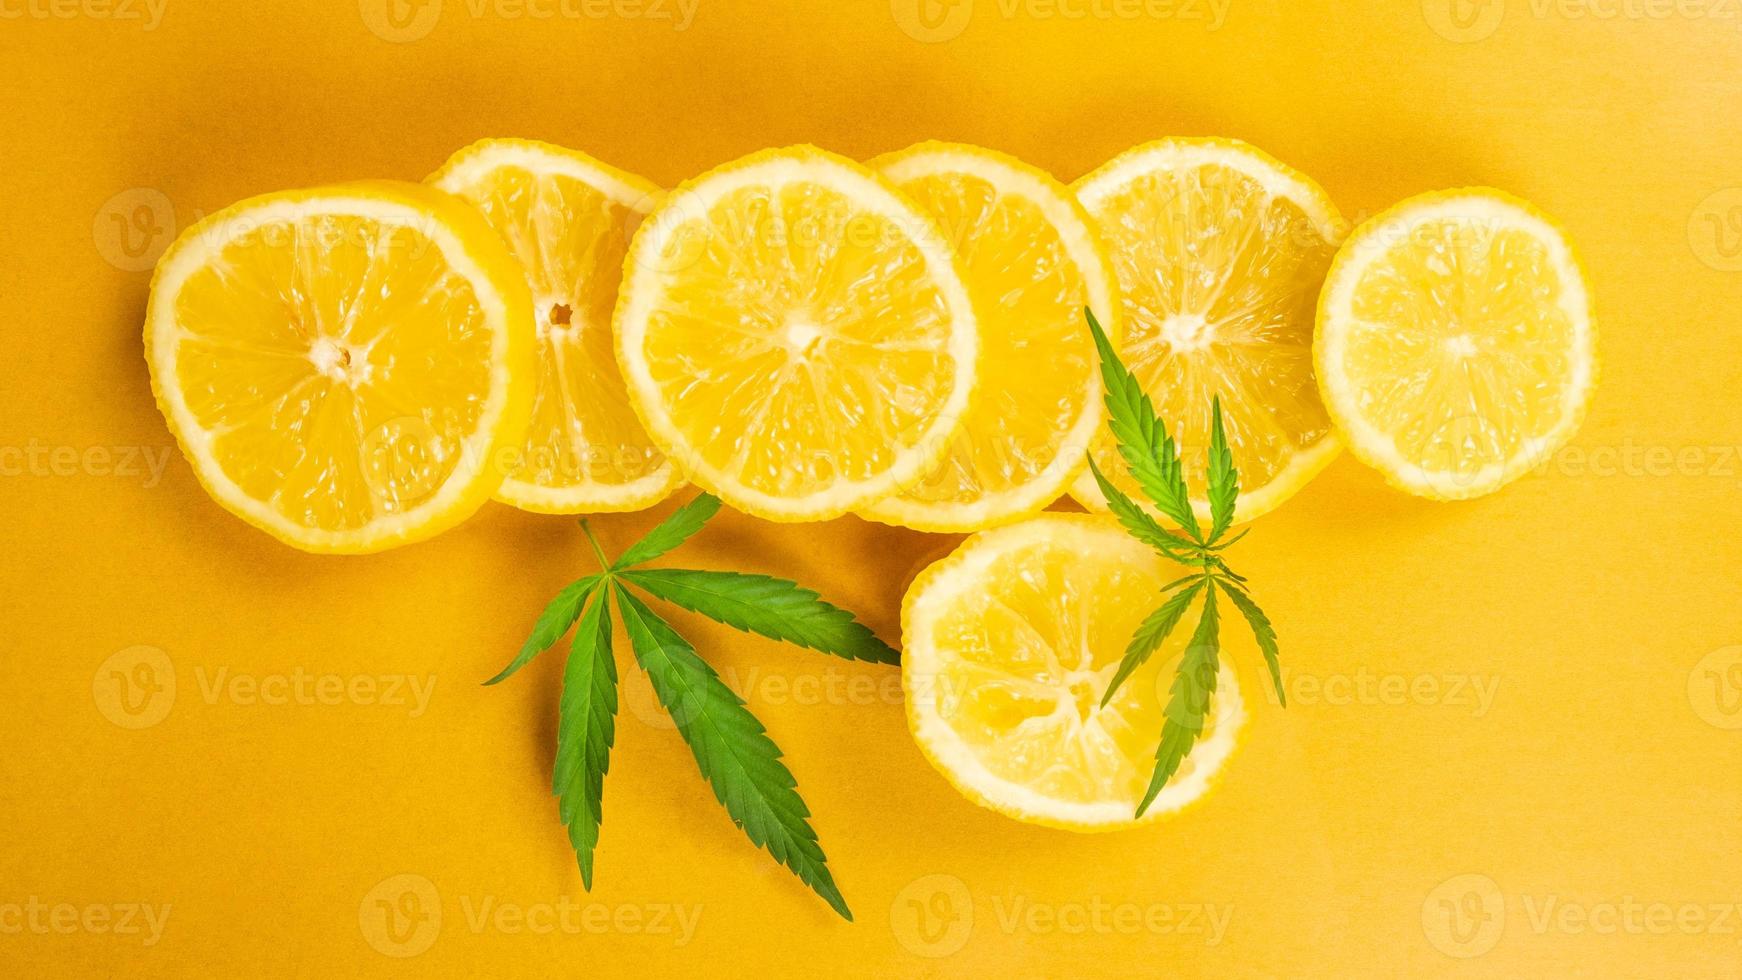 Zitronenscheibe und Marihuanablätter auf gelbem Hintergrund, Cannabis mit Zitrusgeschmack foto